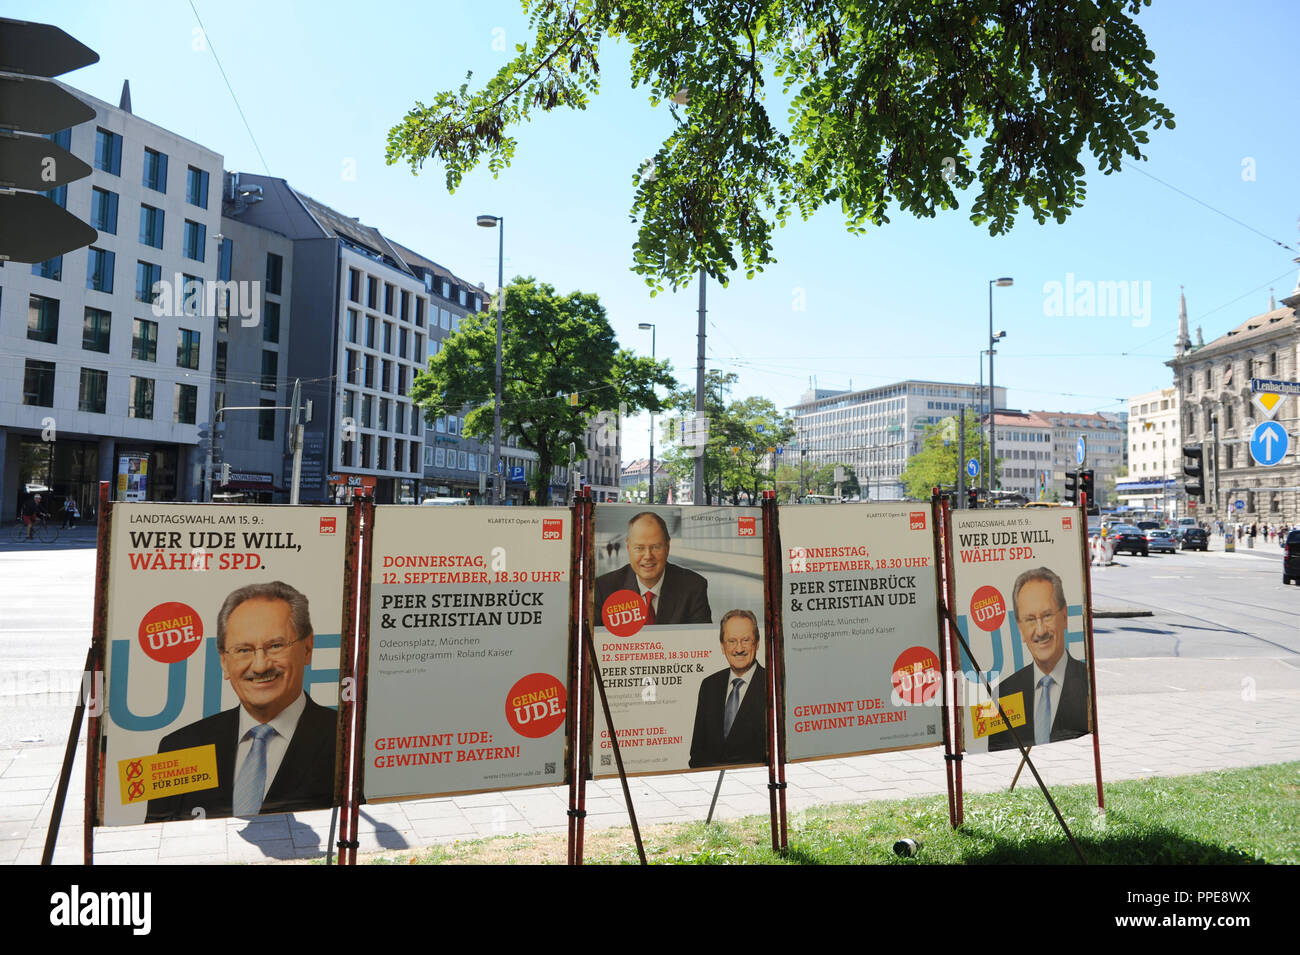 Landtagswahlkampf 2013: Wahlplakate von Christian Ude, SPD-Kandidat für das Amt des Ministerpräsidenten, im Zentrum der Stadt München, die Förderung einer doppelten Rallye mit SPD-Kanzlerkandidat Peer Steinbrueck. Stockfoto